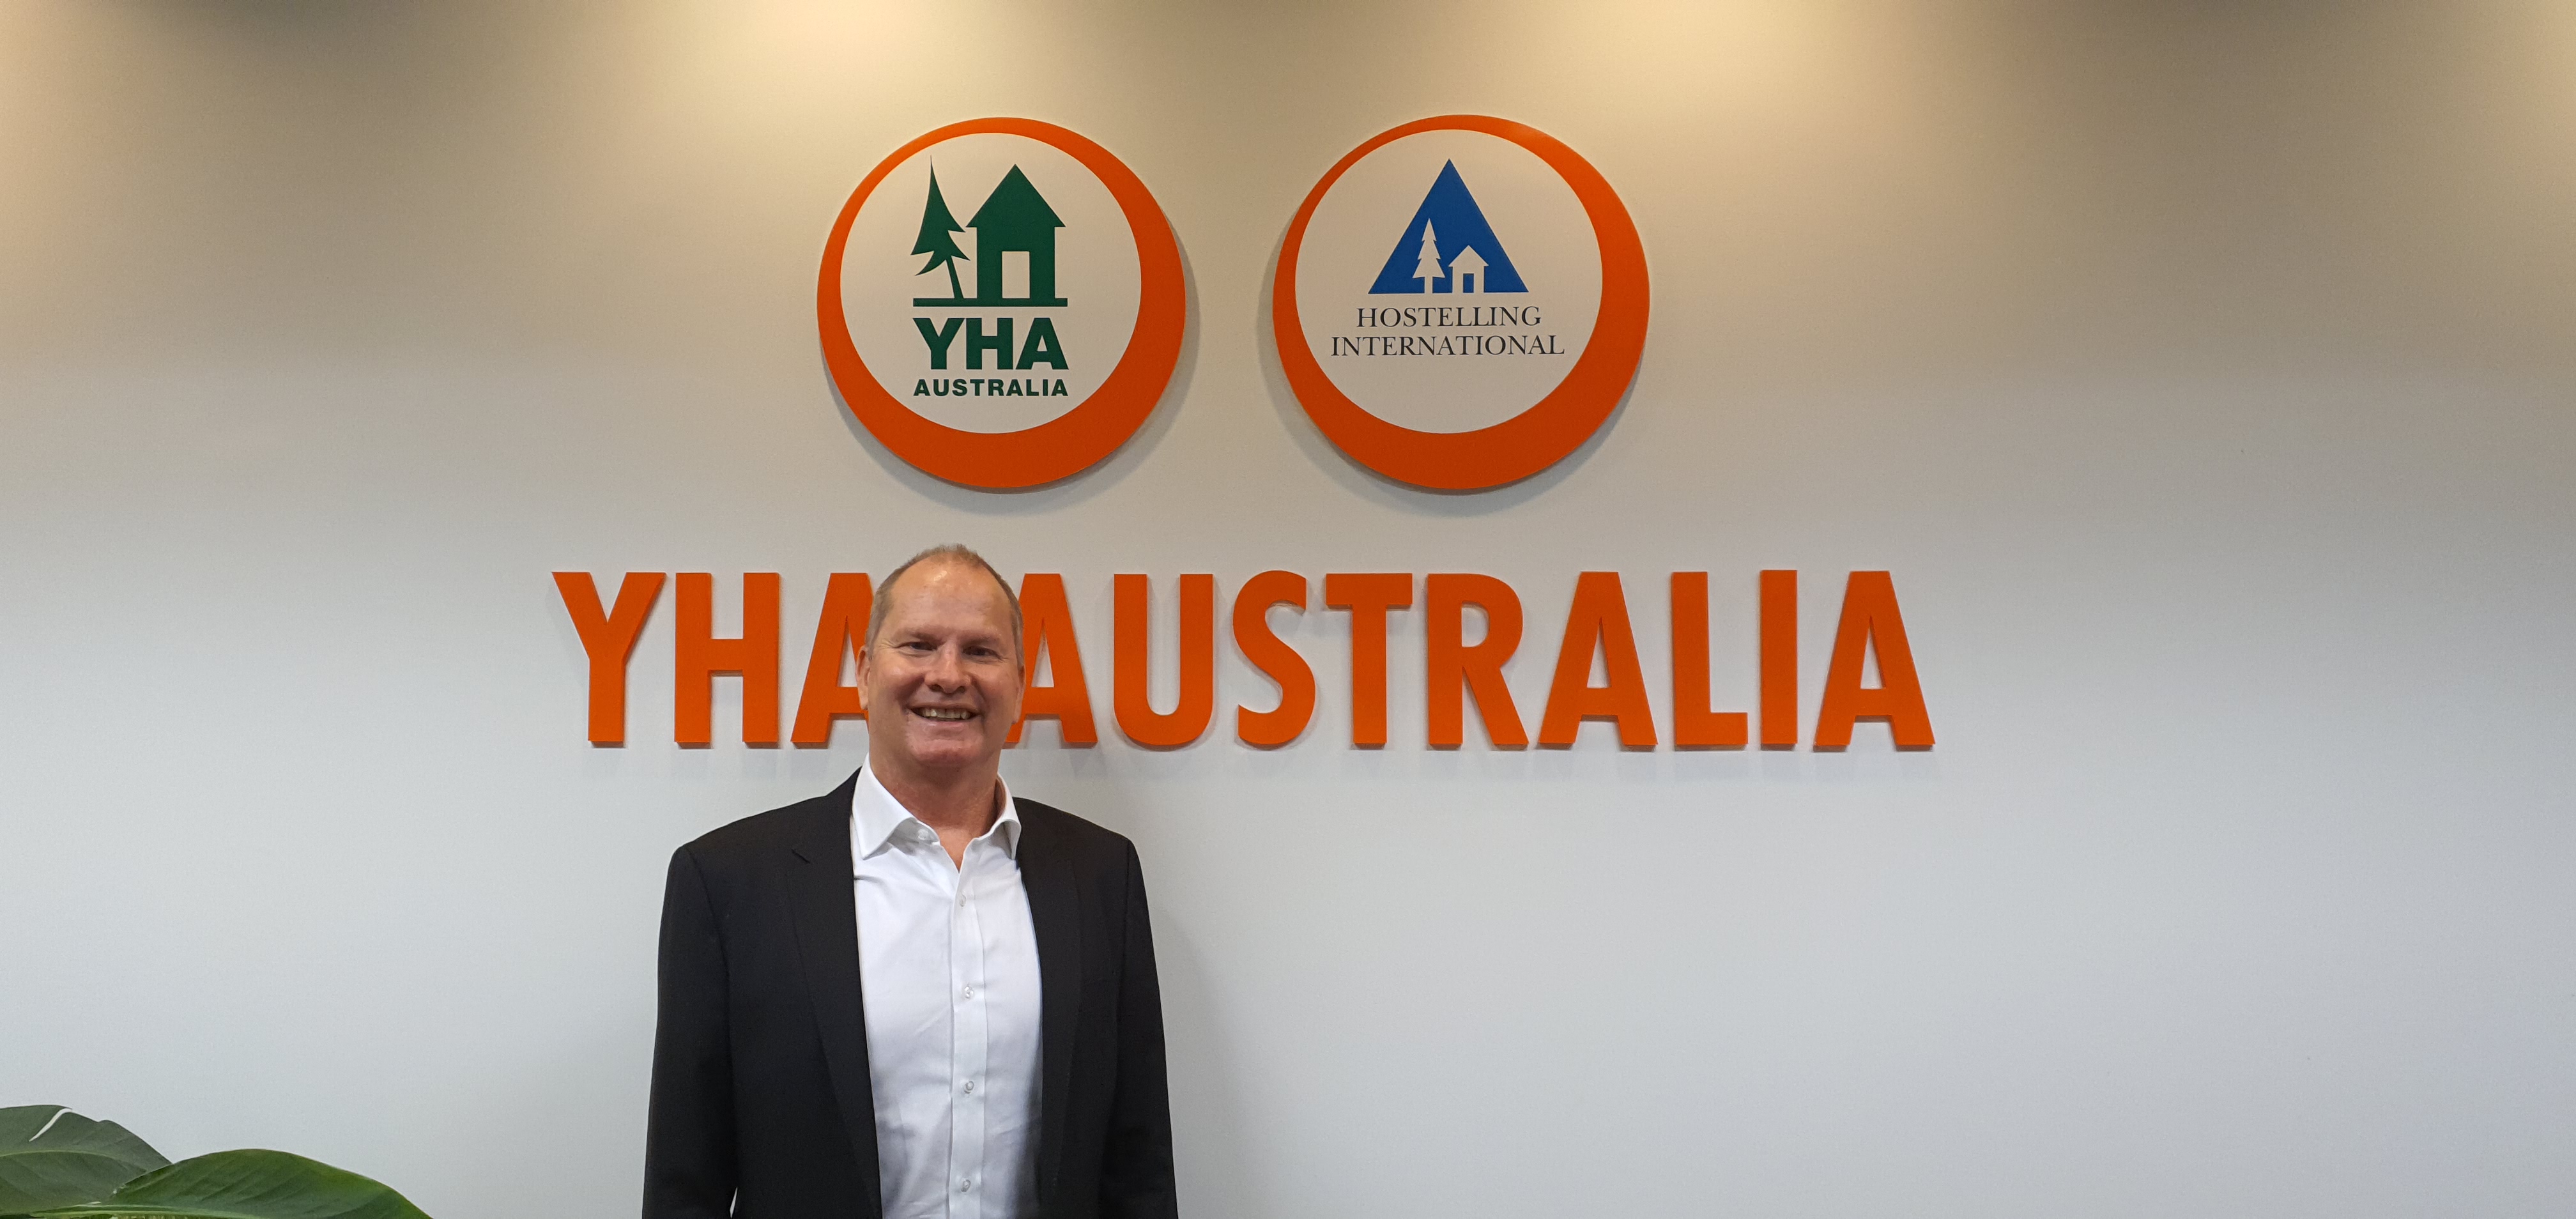 Paul McGrath CEO YHA Australia